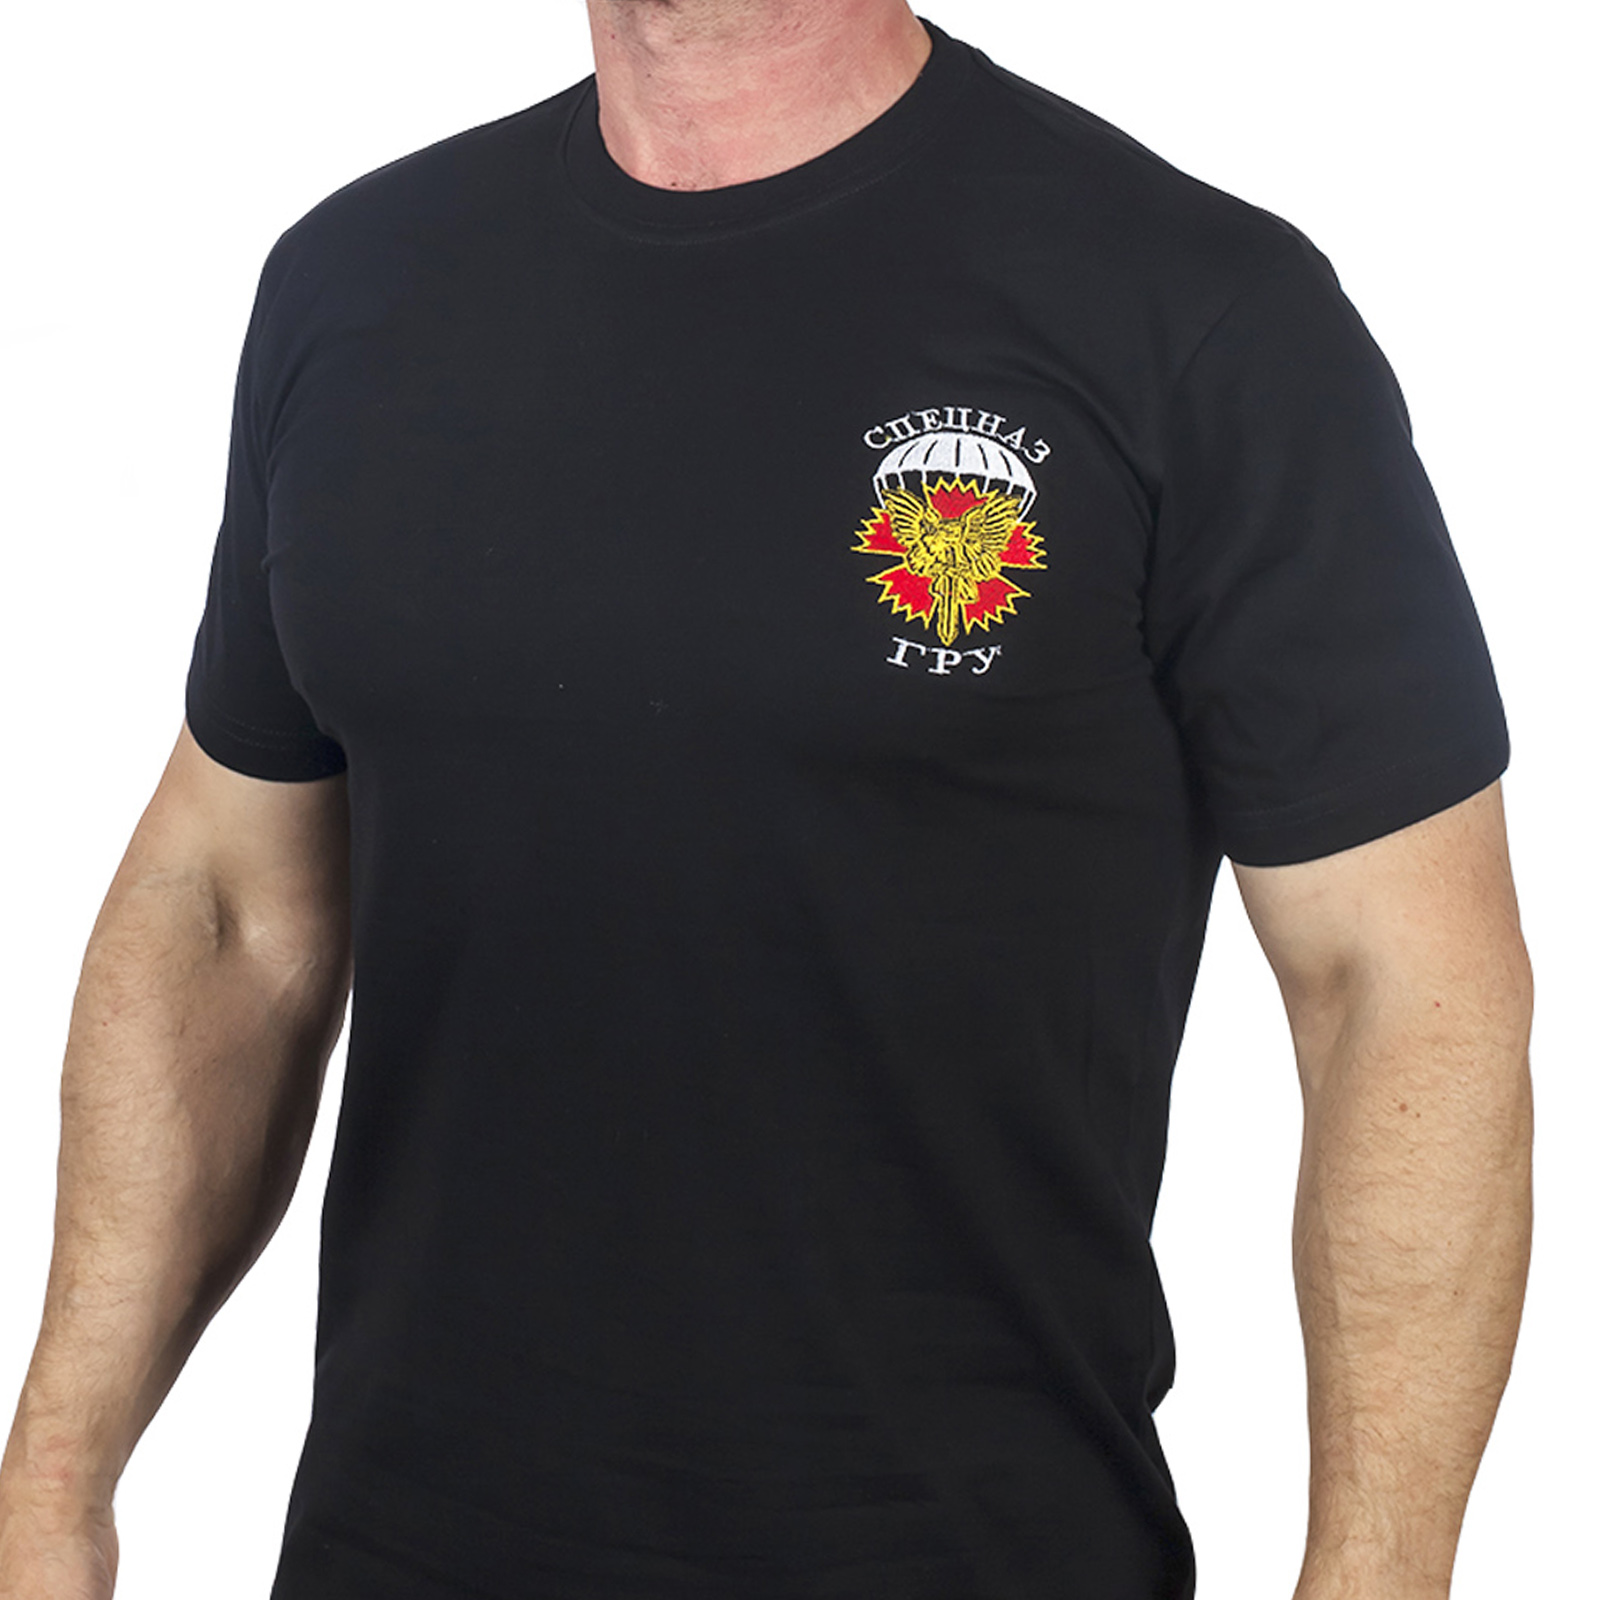 Купить футболку с вышивкой "Спецназ ГРУ" по цене производителя